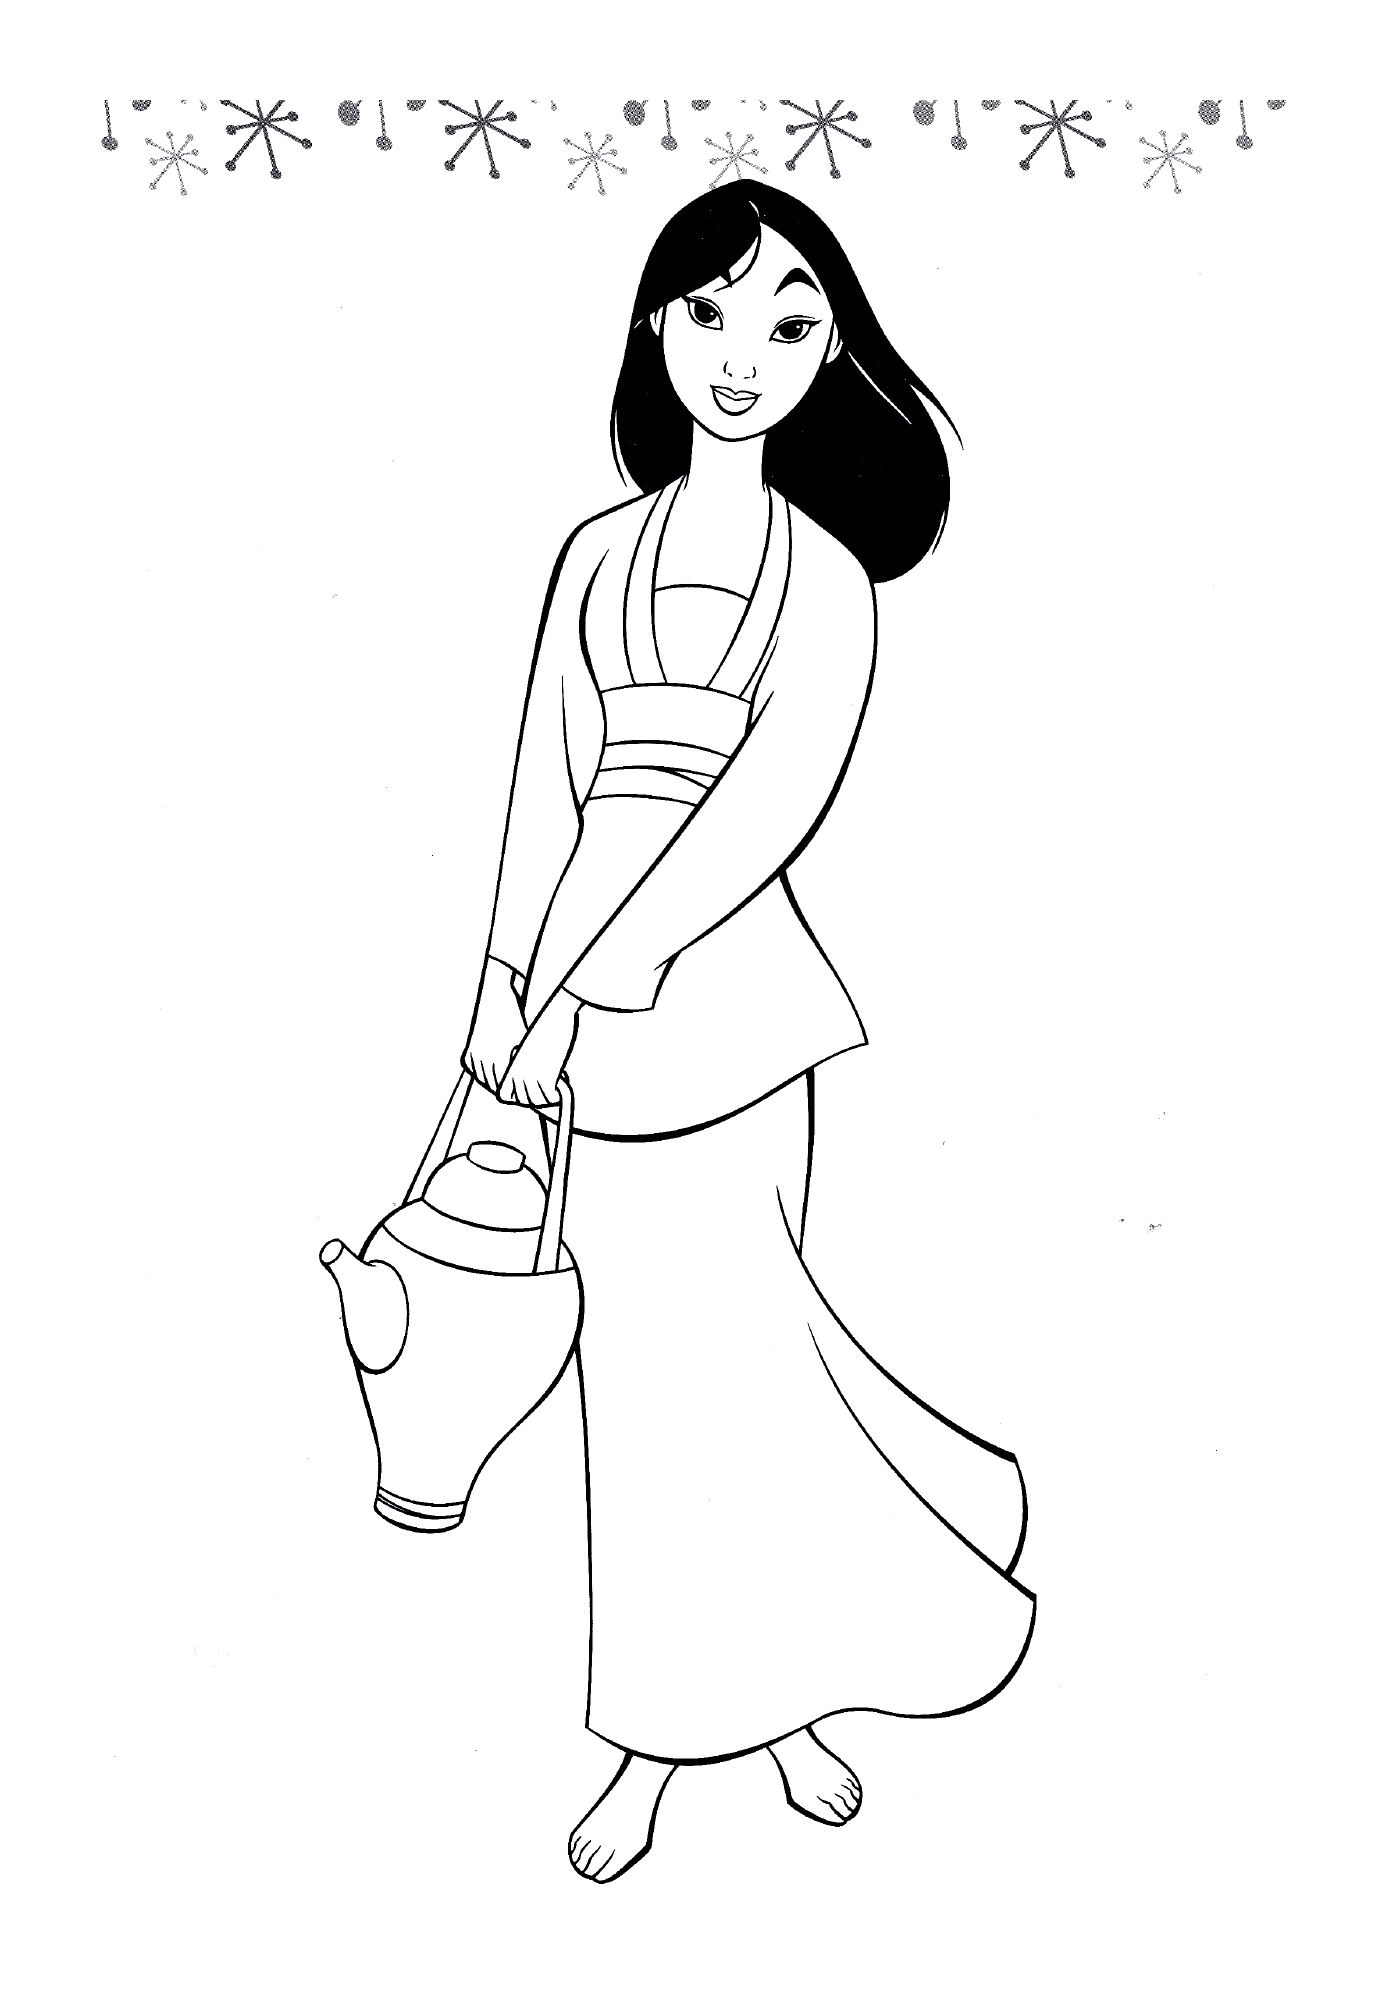  Prinzessin Mulan, gieß die Blumen 